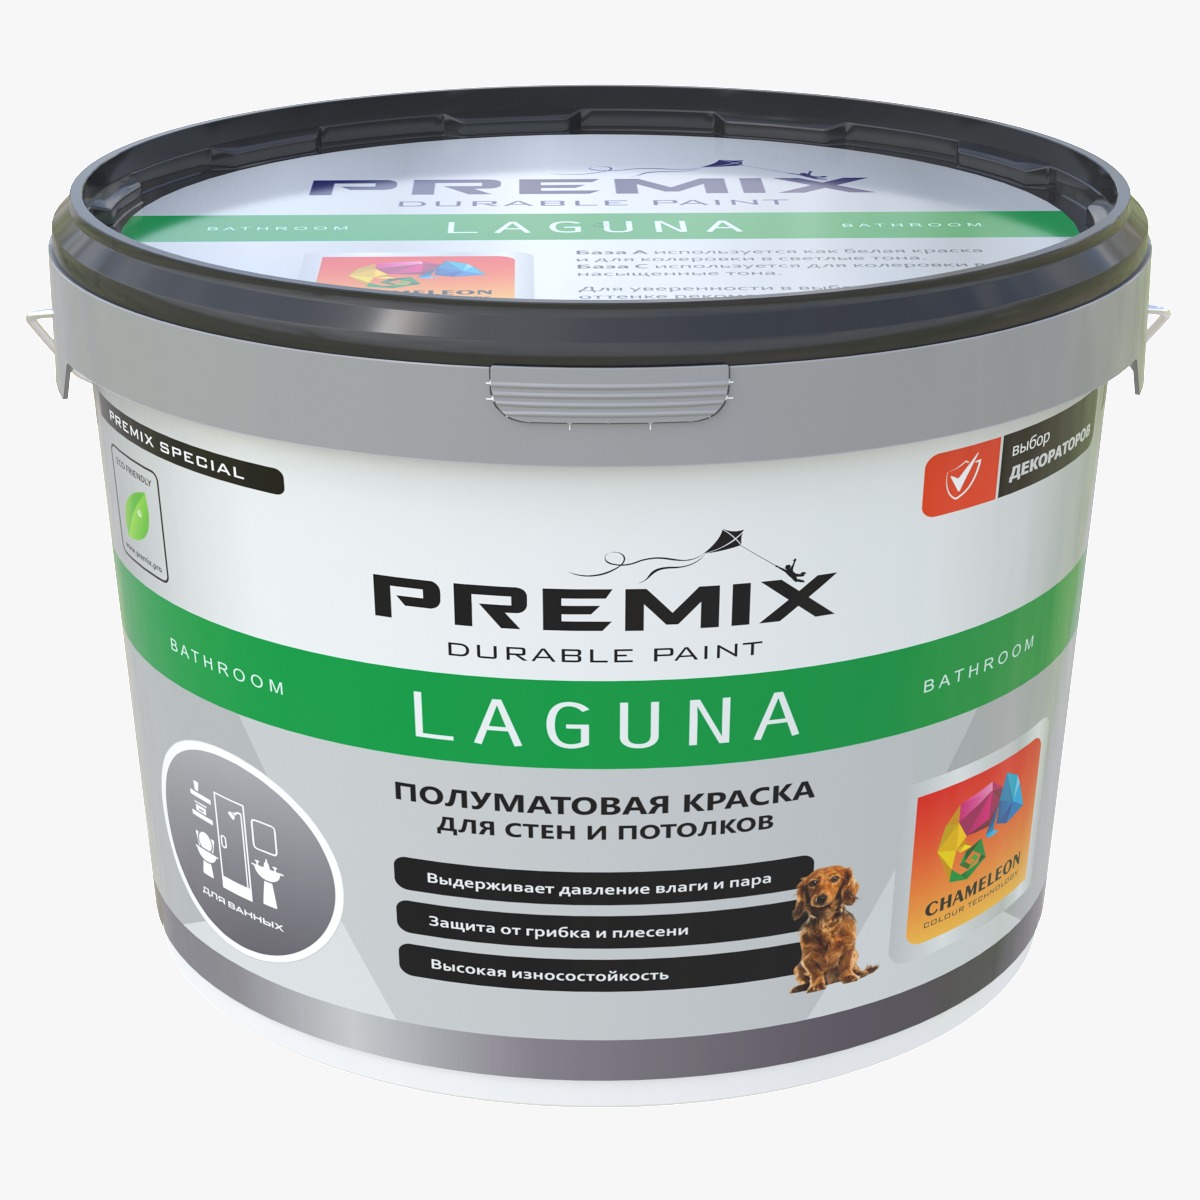 Premix Laguna 9 л. особо устойчивая краска